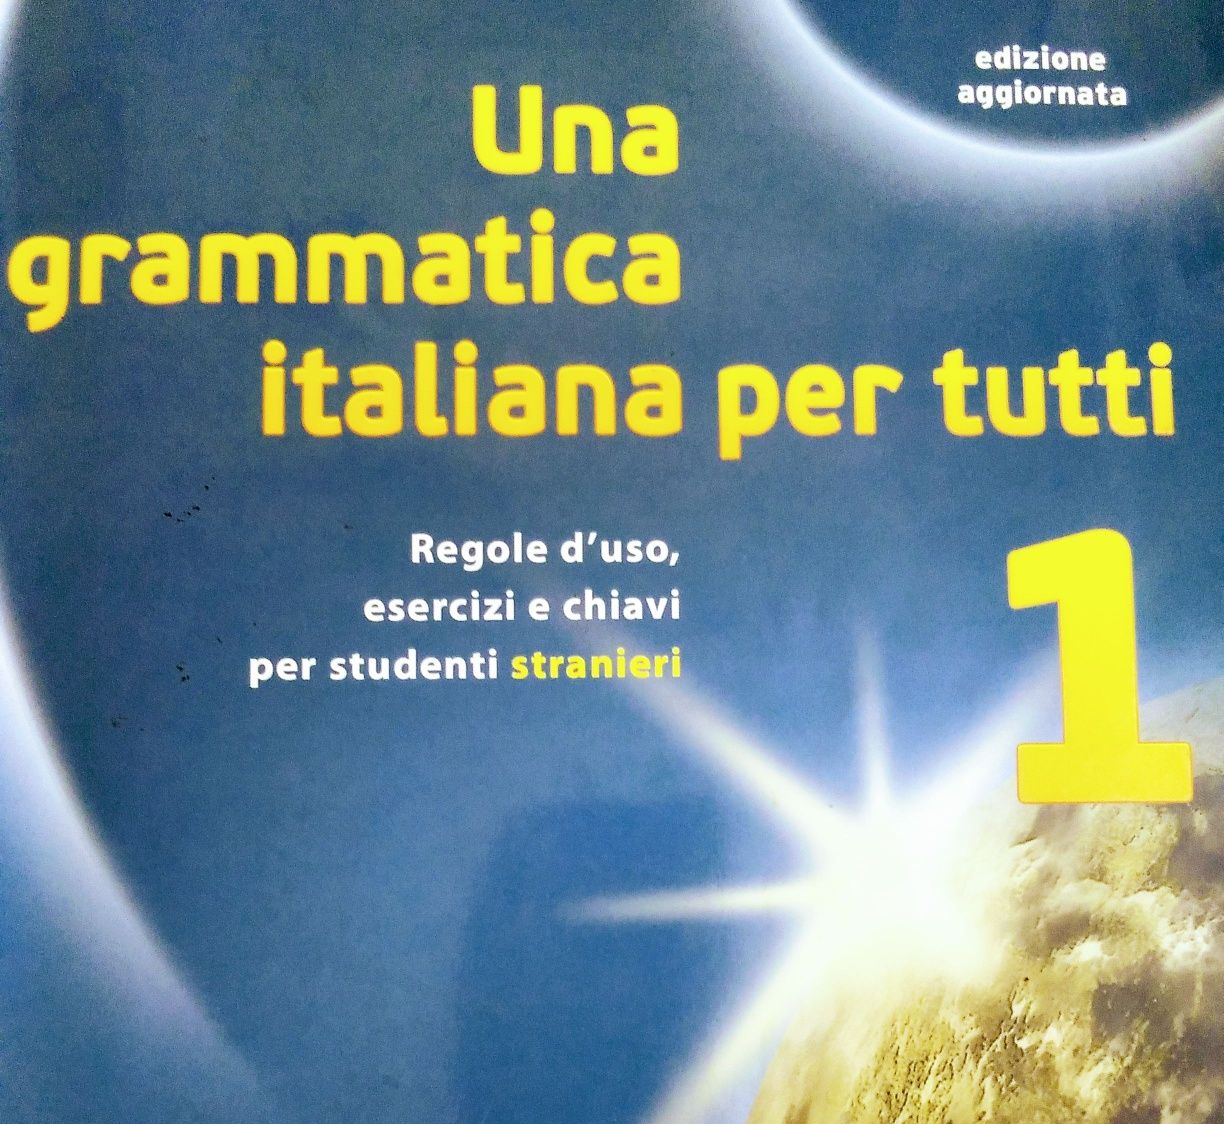 Ефективне навчання італійської мови. Перший урок безкоштовний!